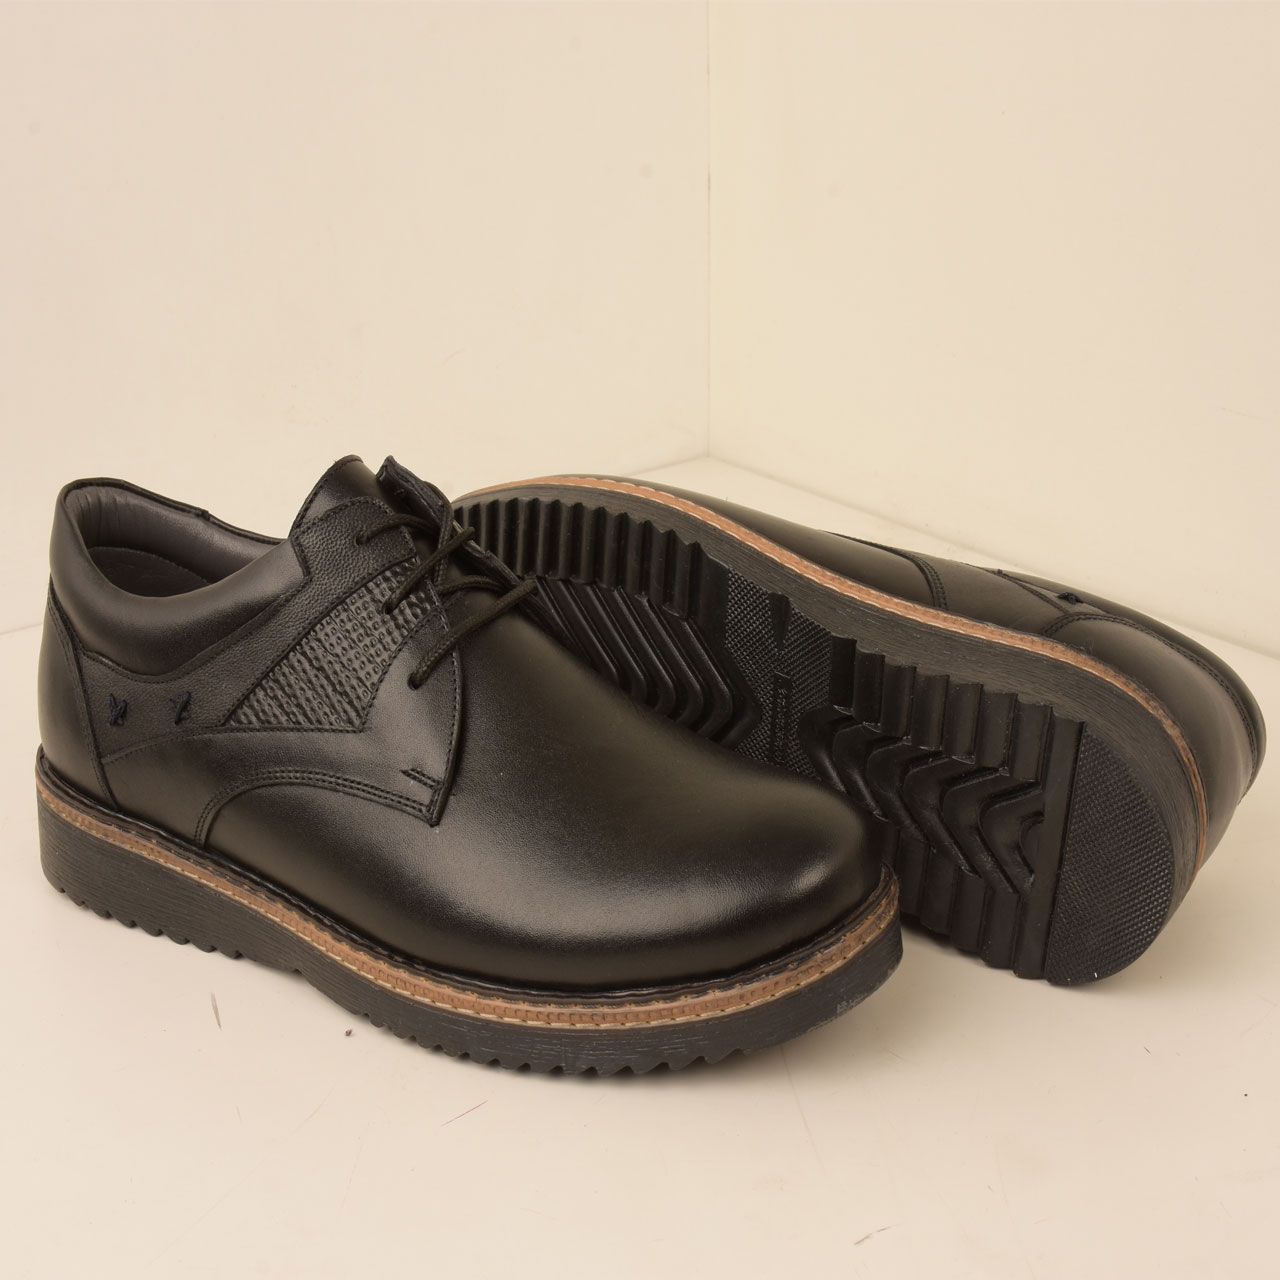  کفش روزمره مردانه پارینه چرم مدل SHO175 -  - 6